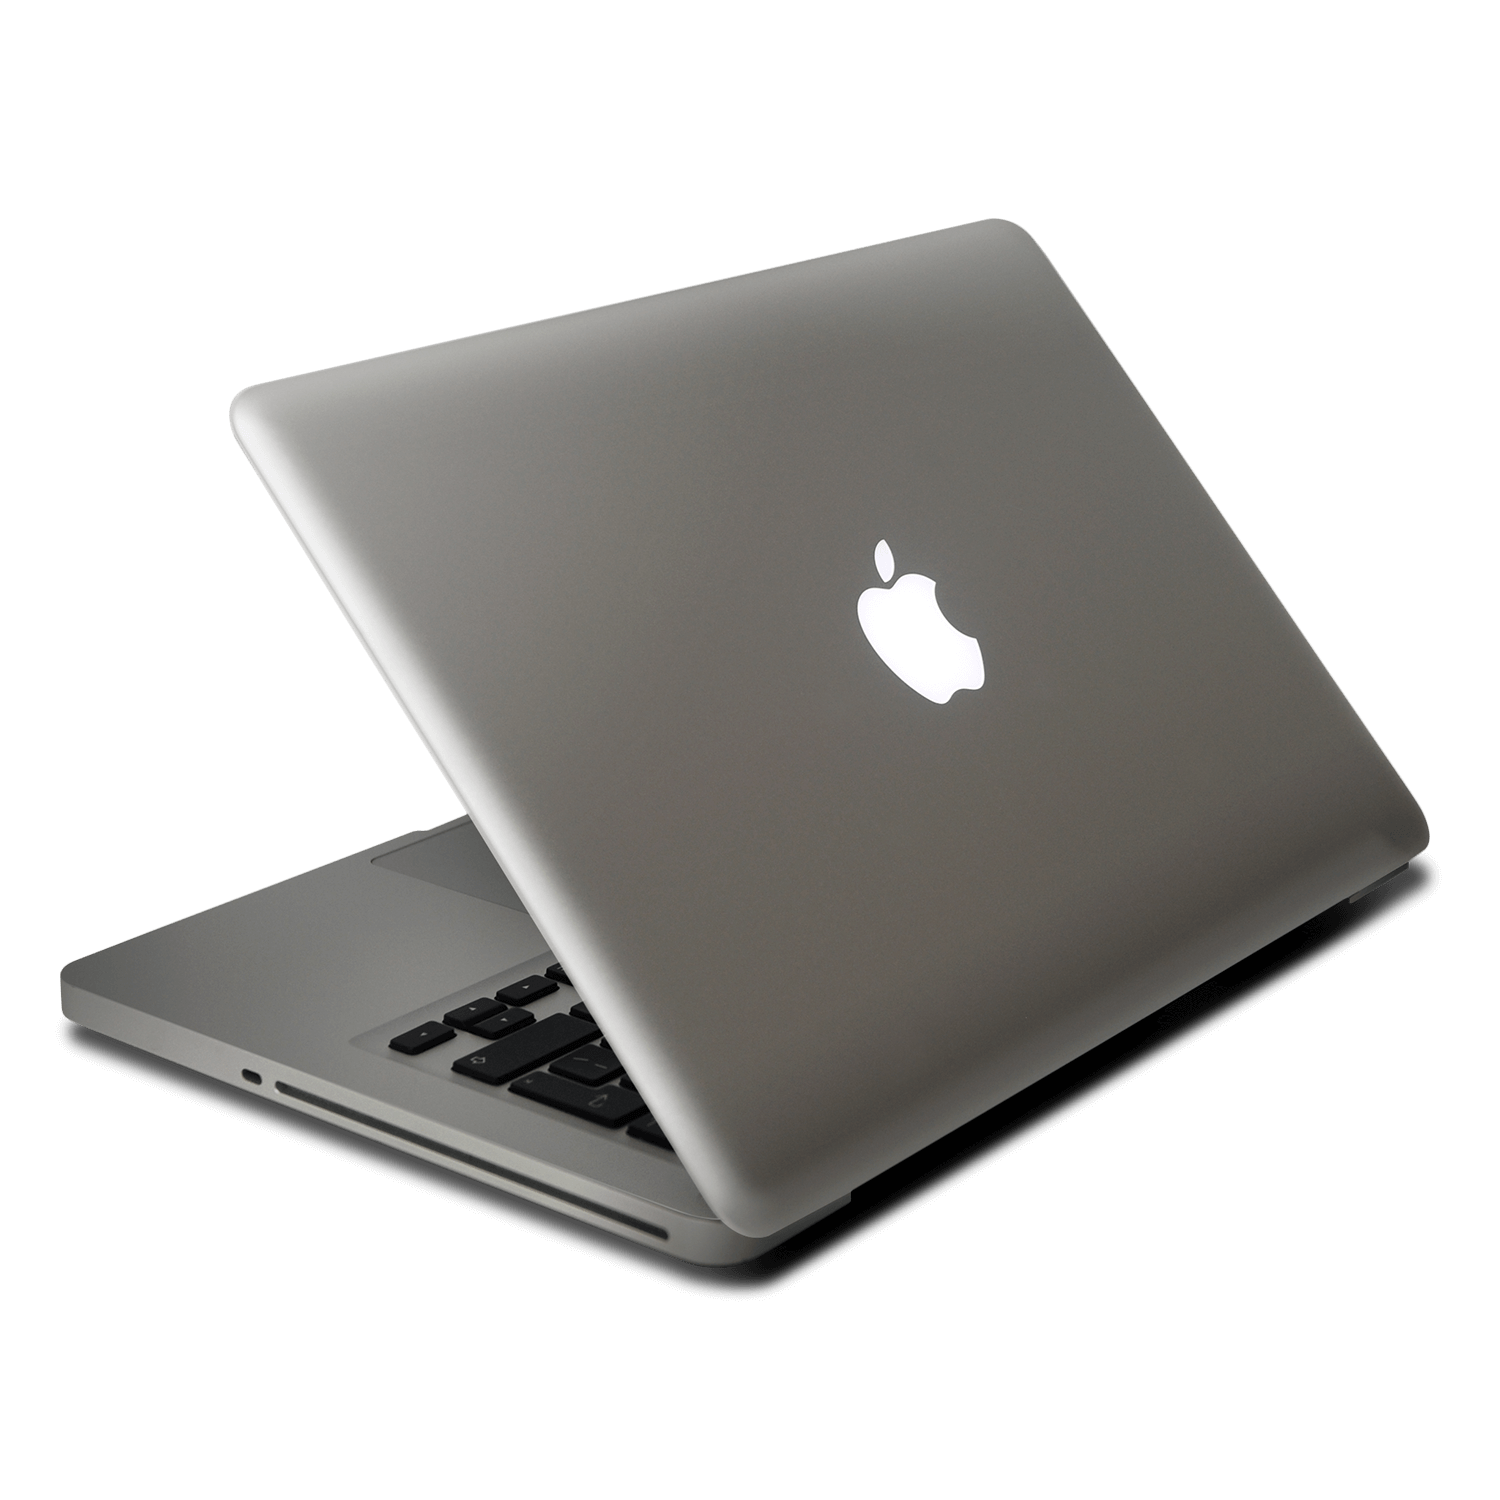 A 13-inch, non-retina MacBook Pro